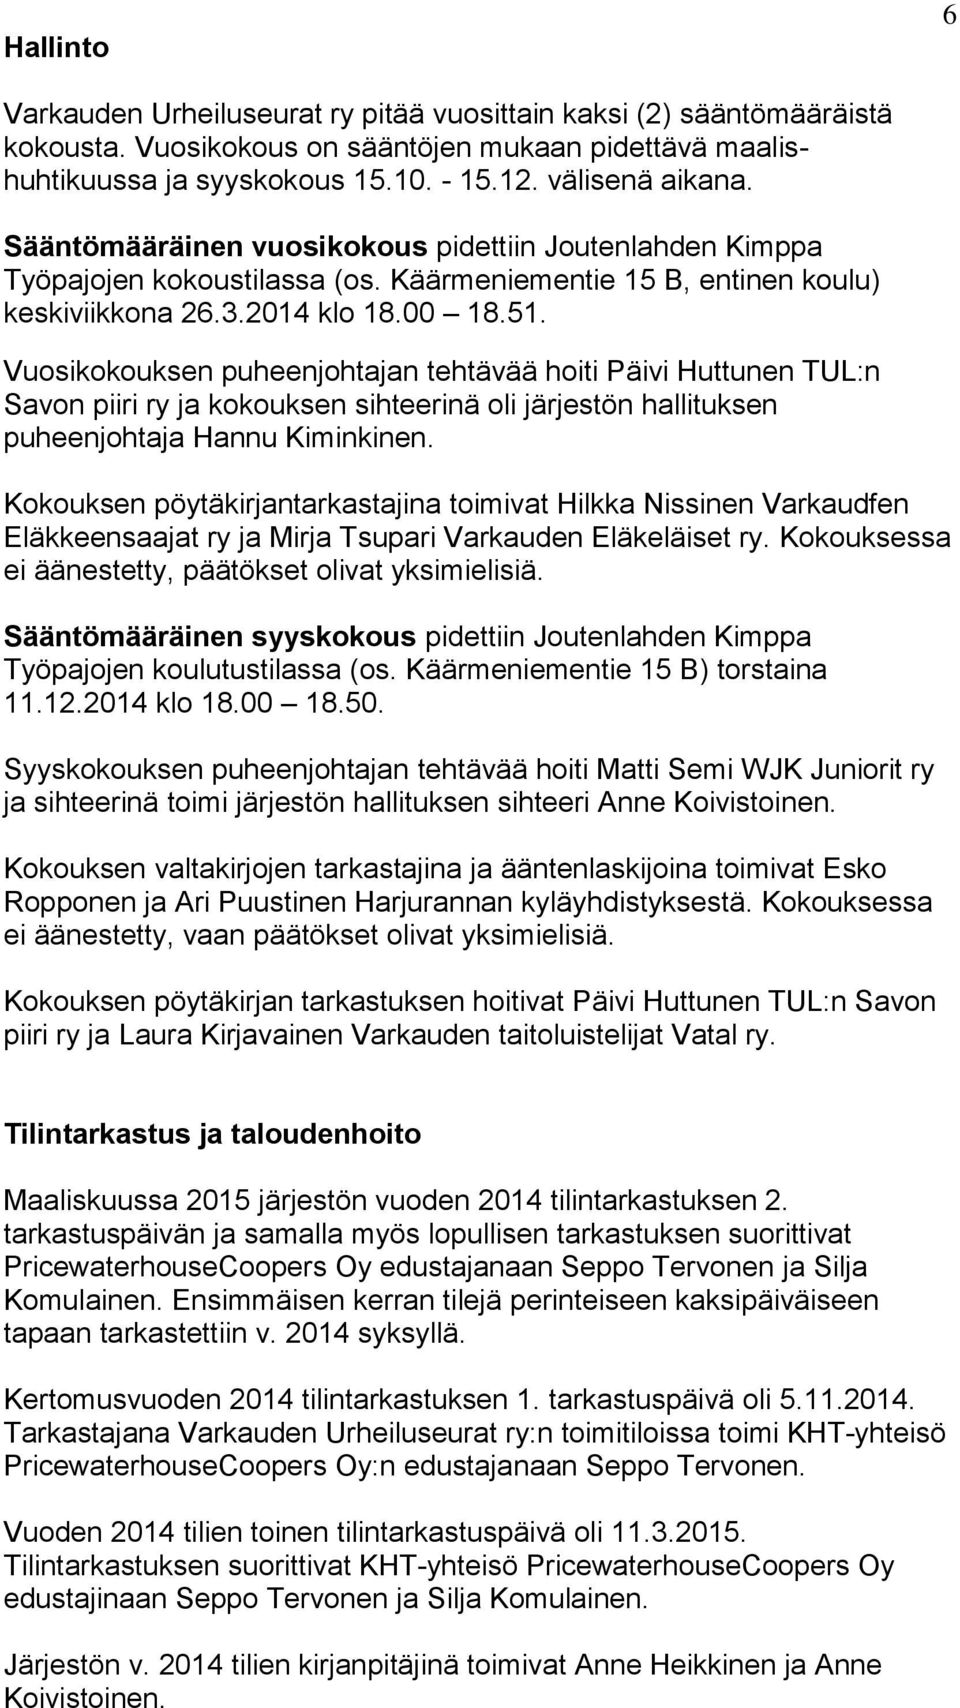 Vuosikokouksen puheenjohtajan tehtävää hoiti Päivi Huttunen TUL:n Savon piiri ry ja kokouksen sihteerinä oli järjestön hallituksen puheenjohtaja Hannu Kiminkinen.